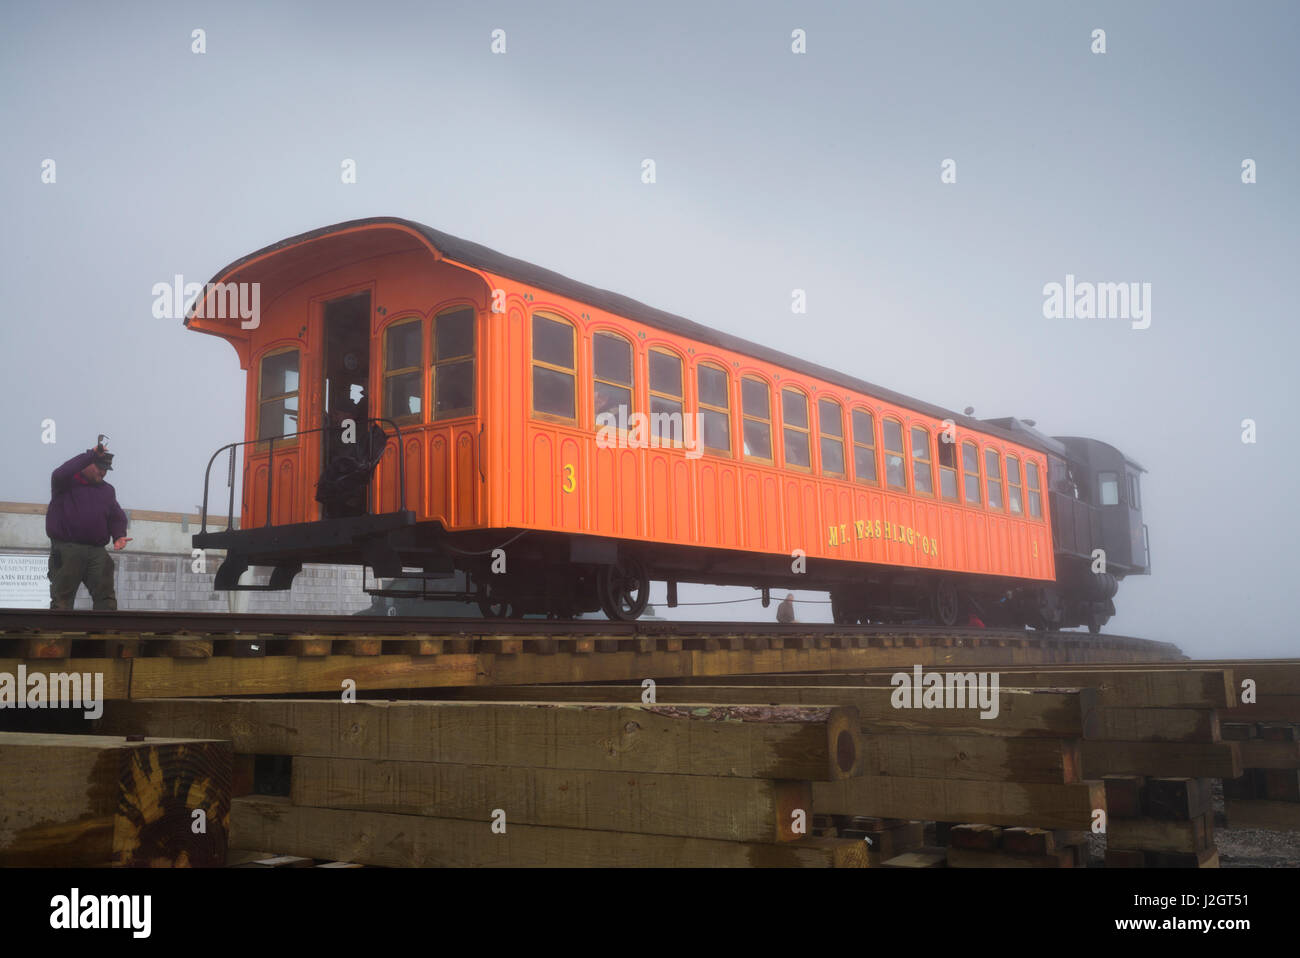 USA, New Hampshire, White Mountains, Bretton Woods, Mount Washington Cog Railway Stock Photo